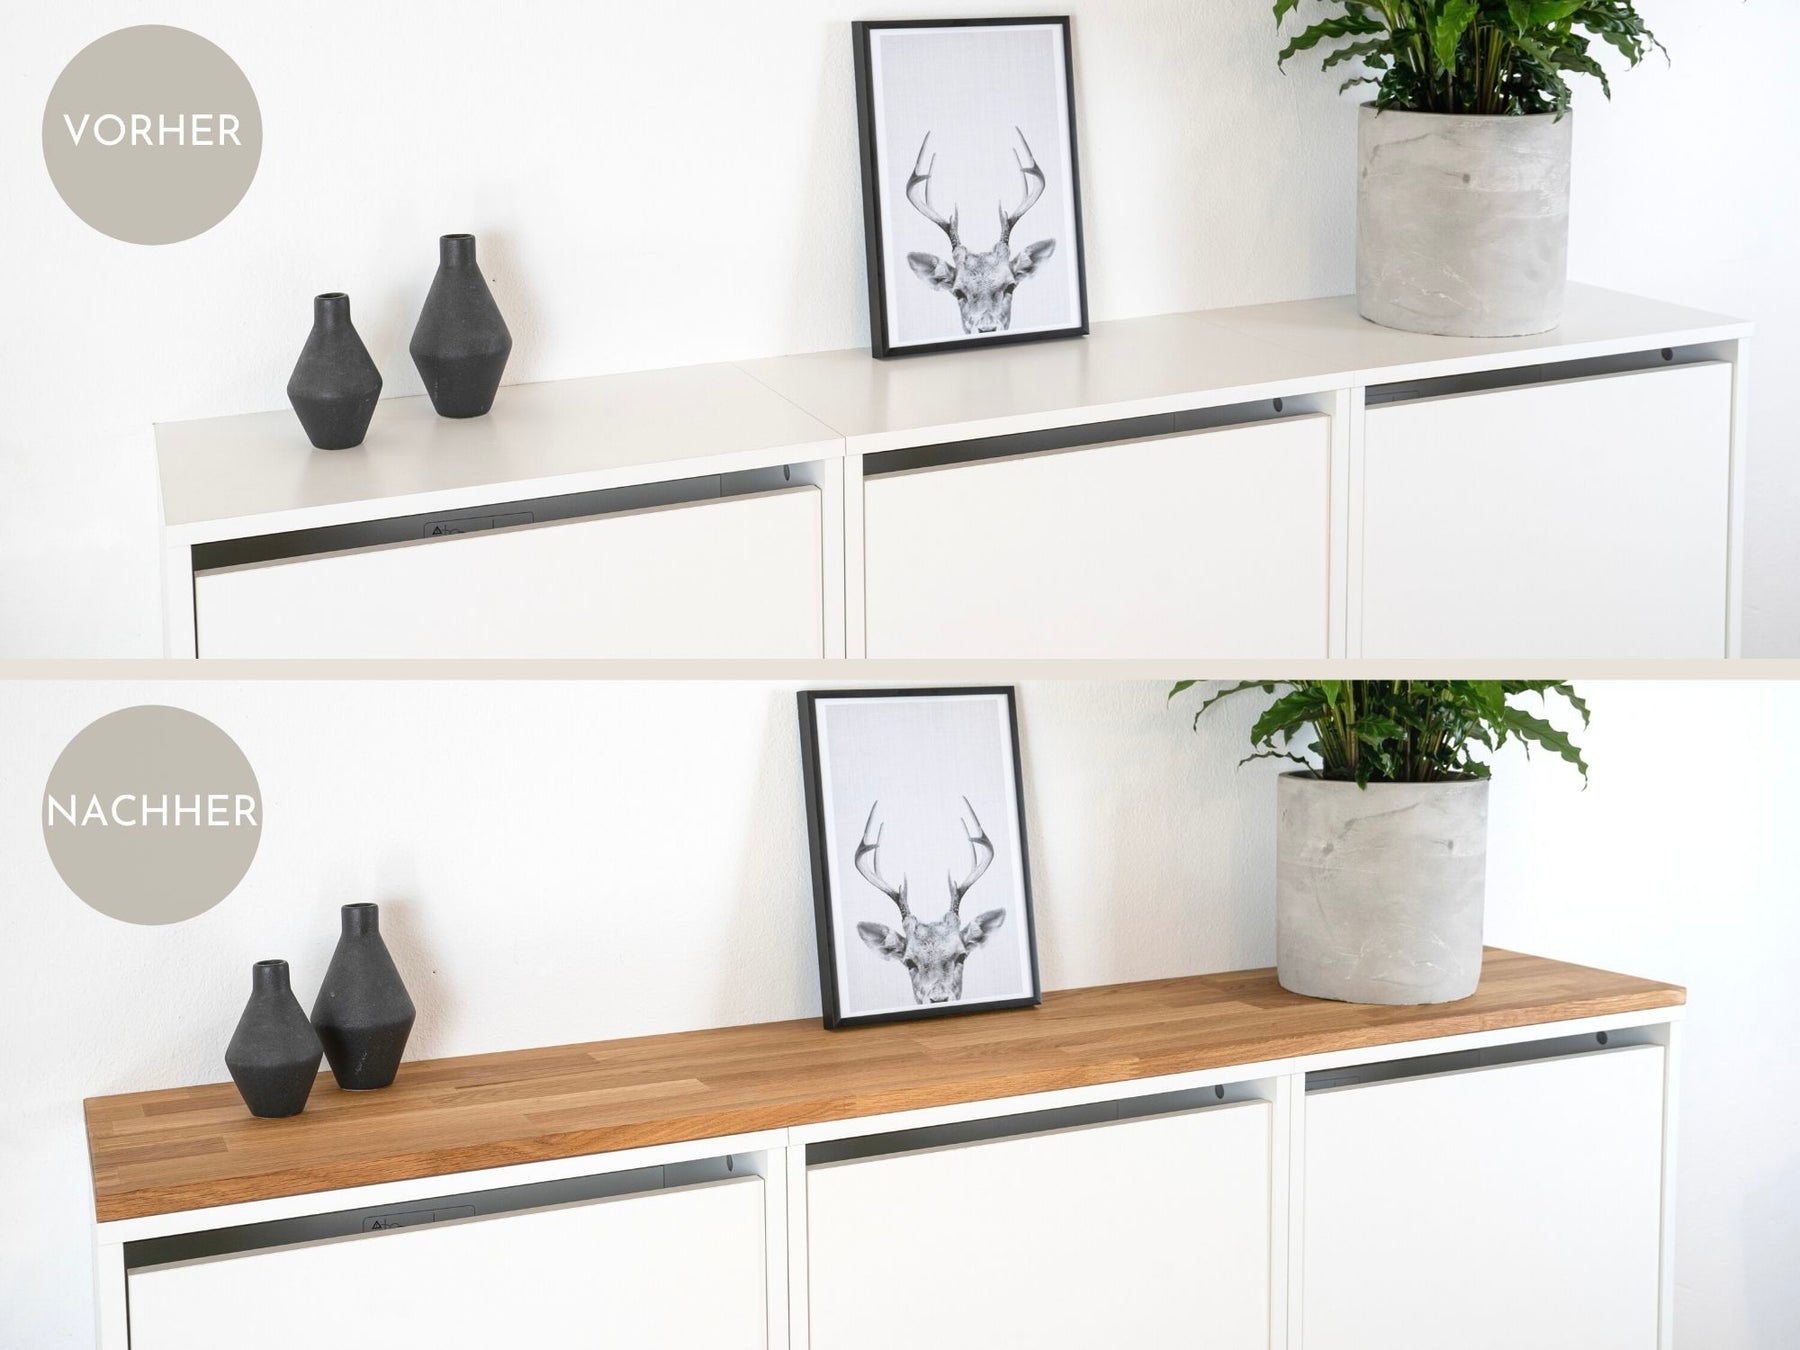 Ikea Bissa 3 mit Holzplatte in Eiche Natur Vorher/Nachher Vergleich im Detail